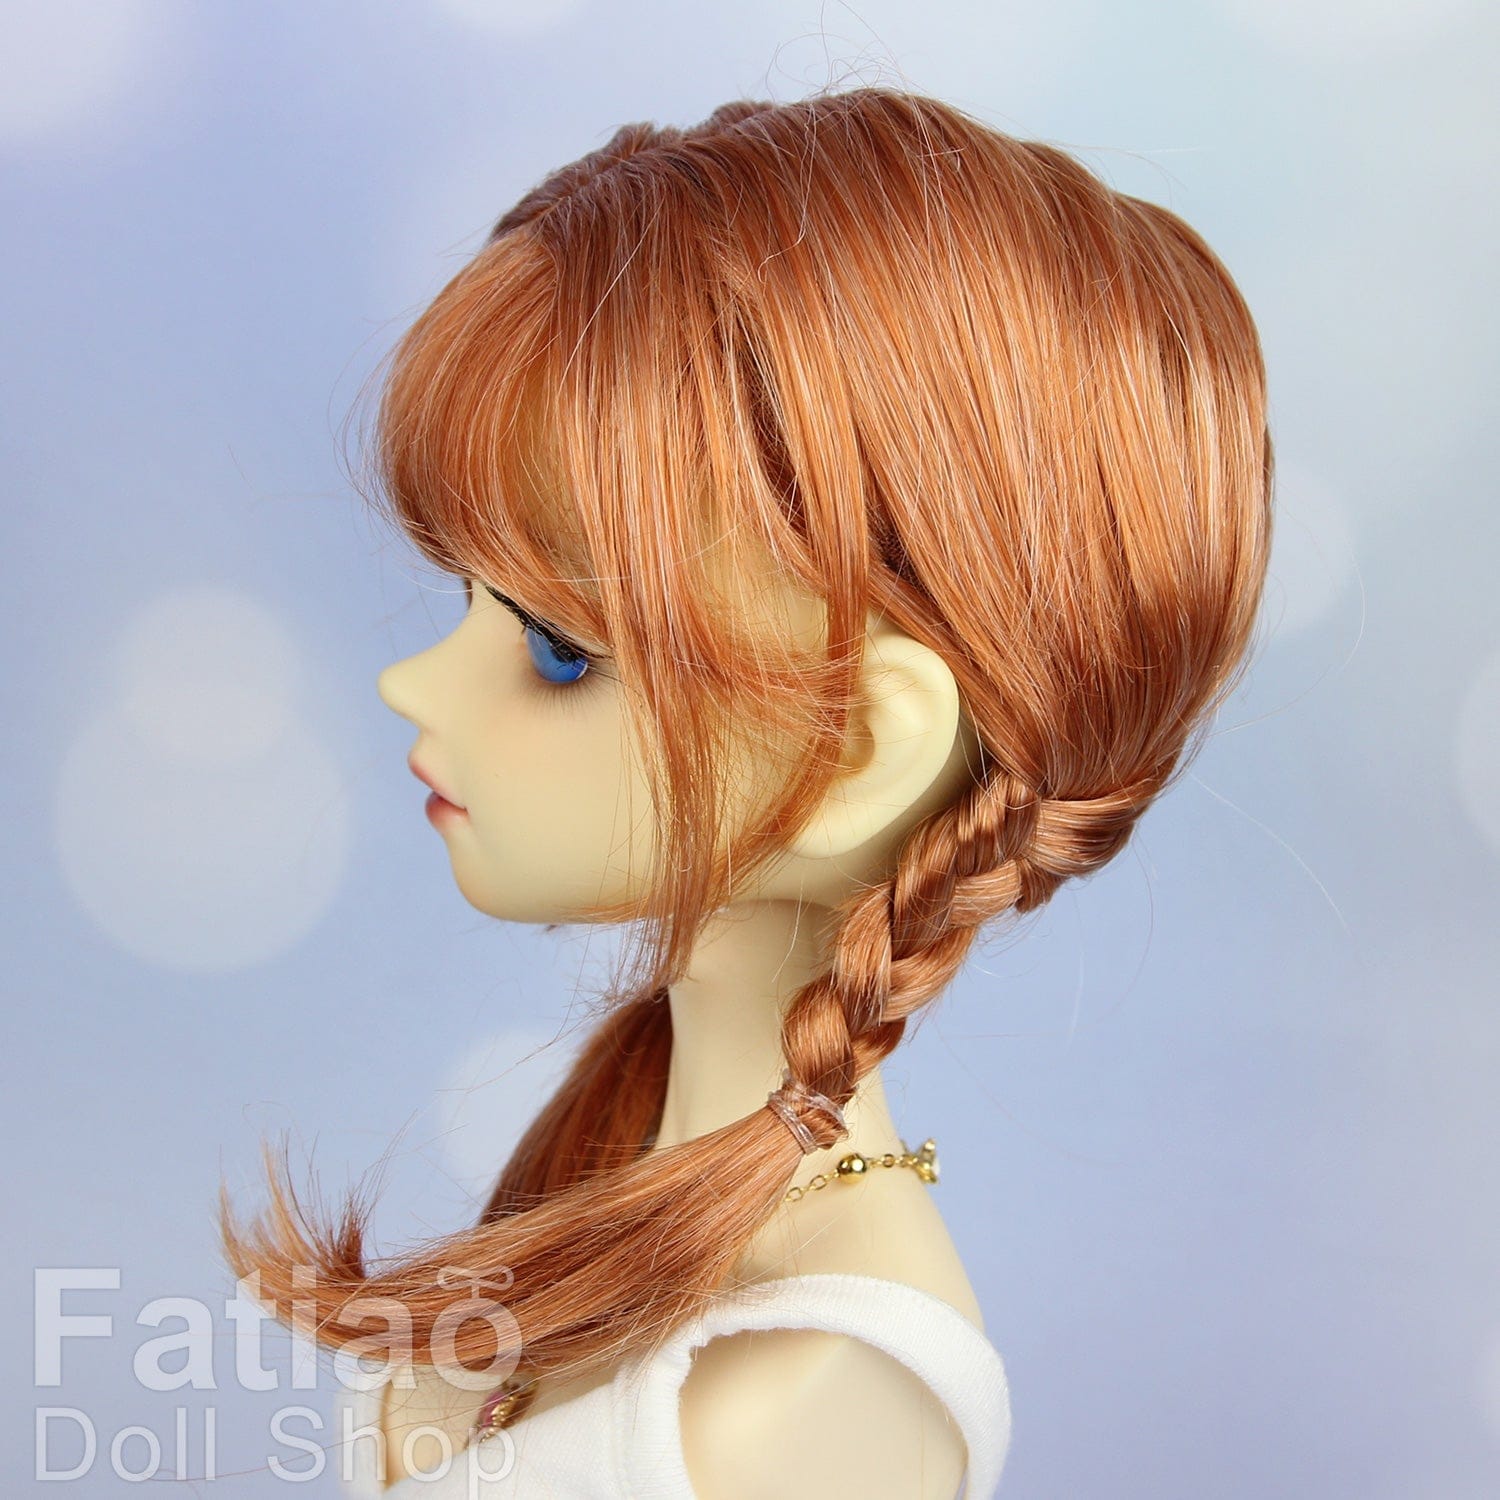 【Fatiao Doll Shop】FWF-685 娃用假髮 多色 / 9-10吋 BJD DD MDD 3分